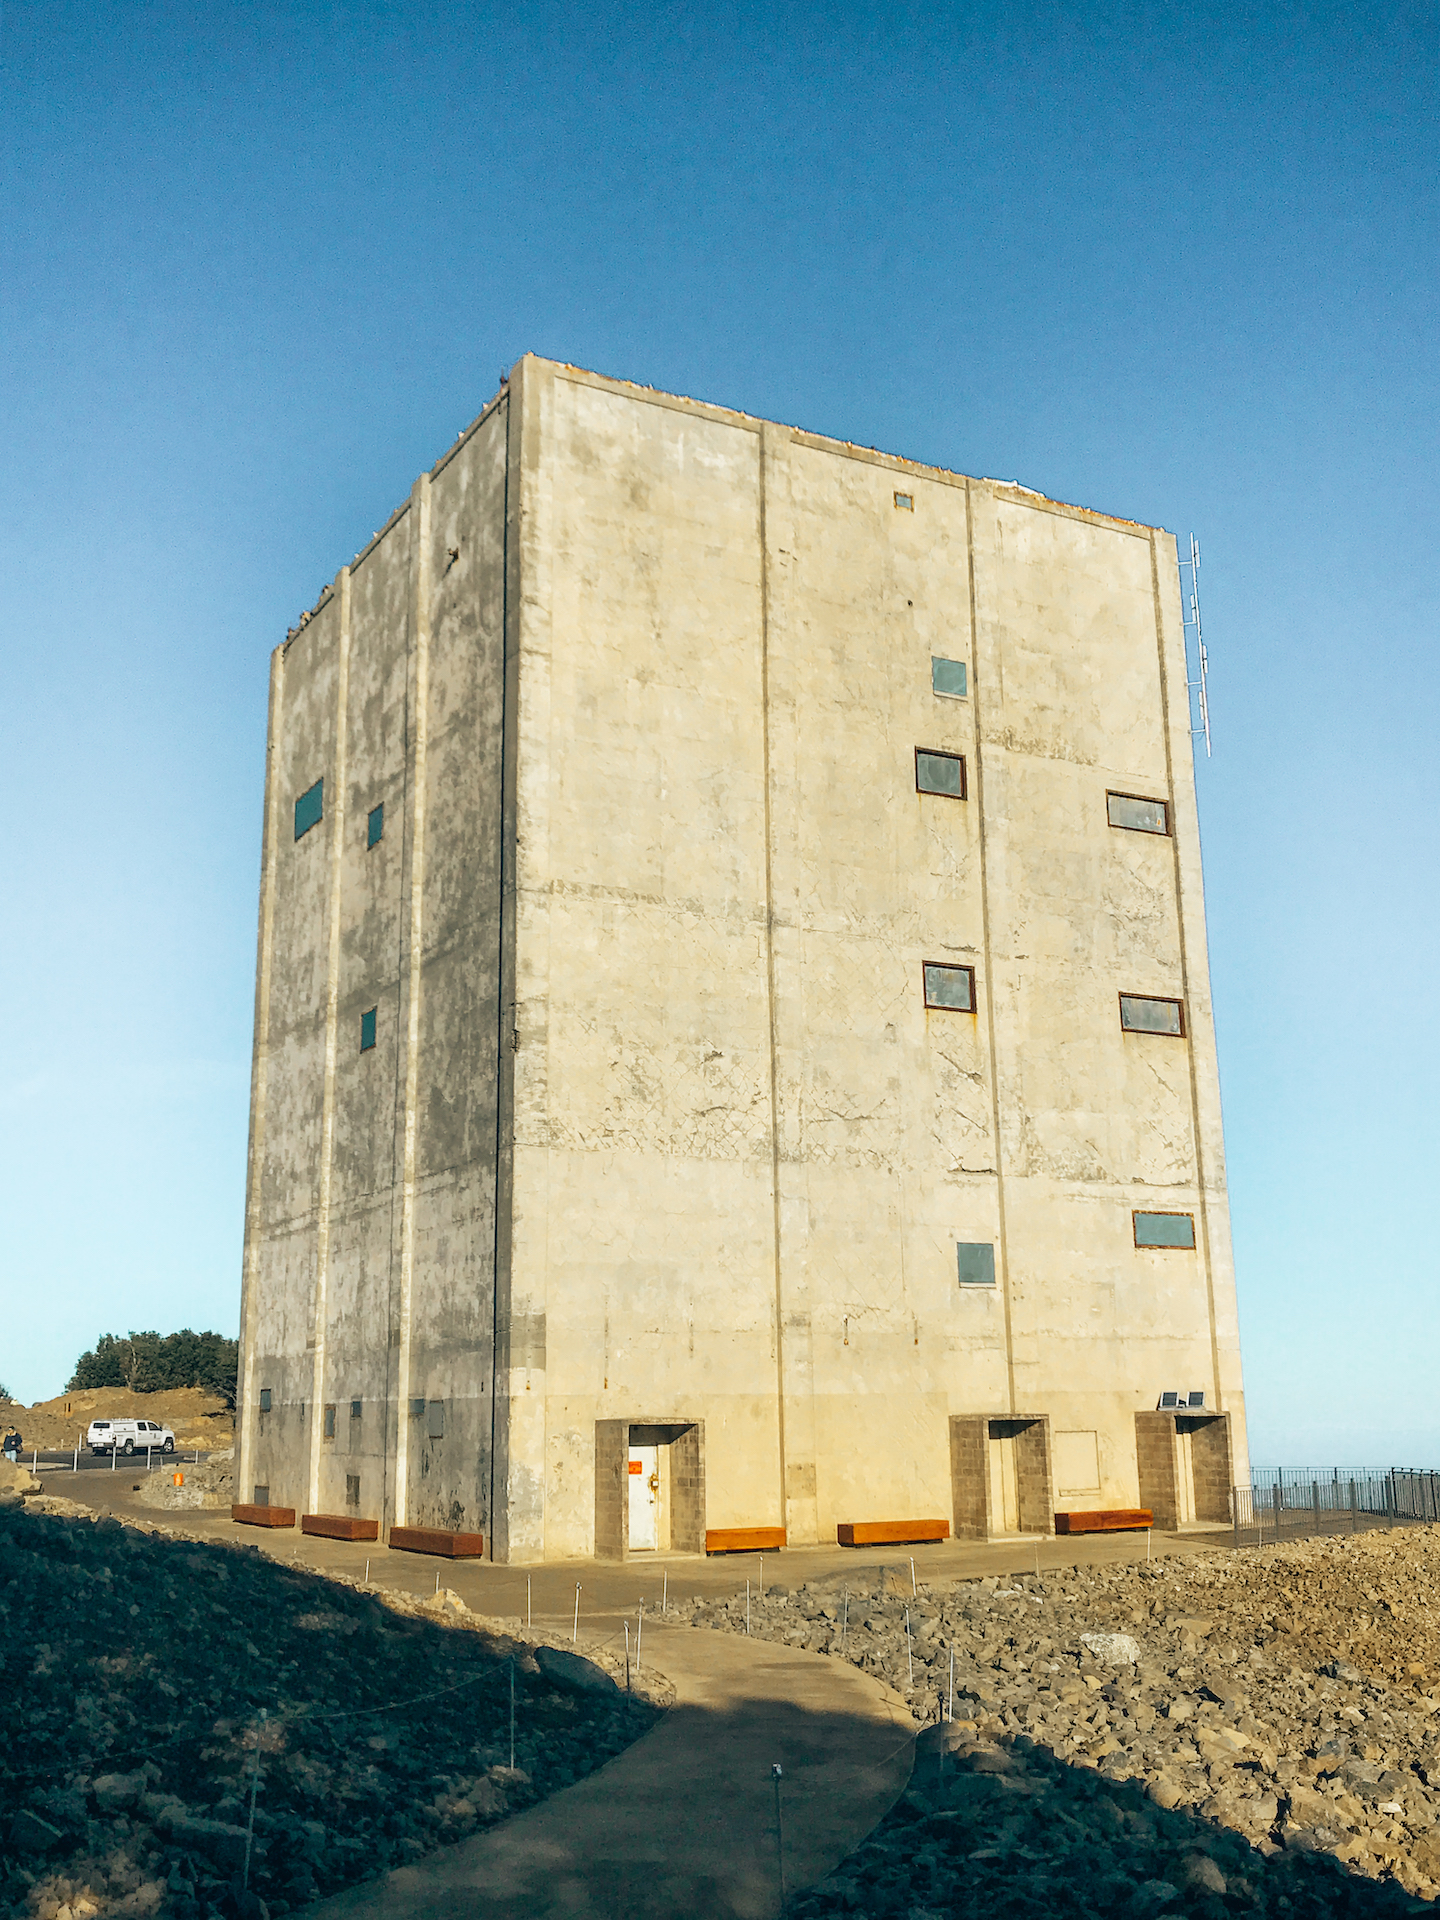 Radar Station - Mount Umunhum, California - 11 UNIQUE  PLACES TO VISIT IN CALIFORNIA